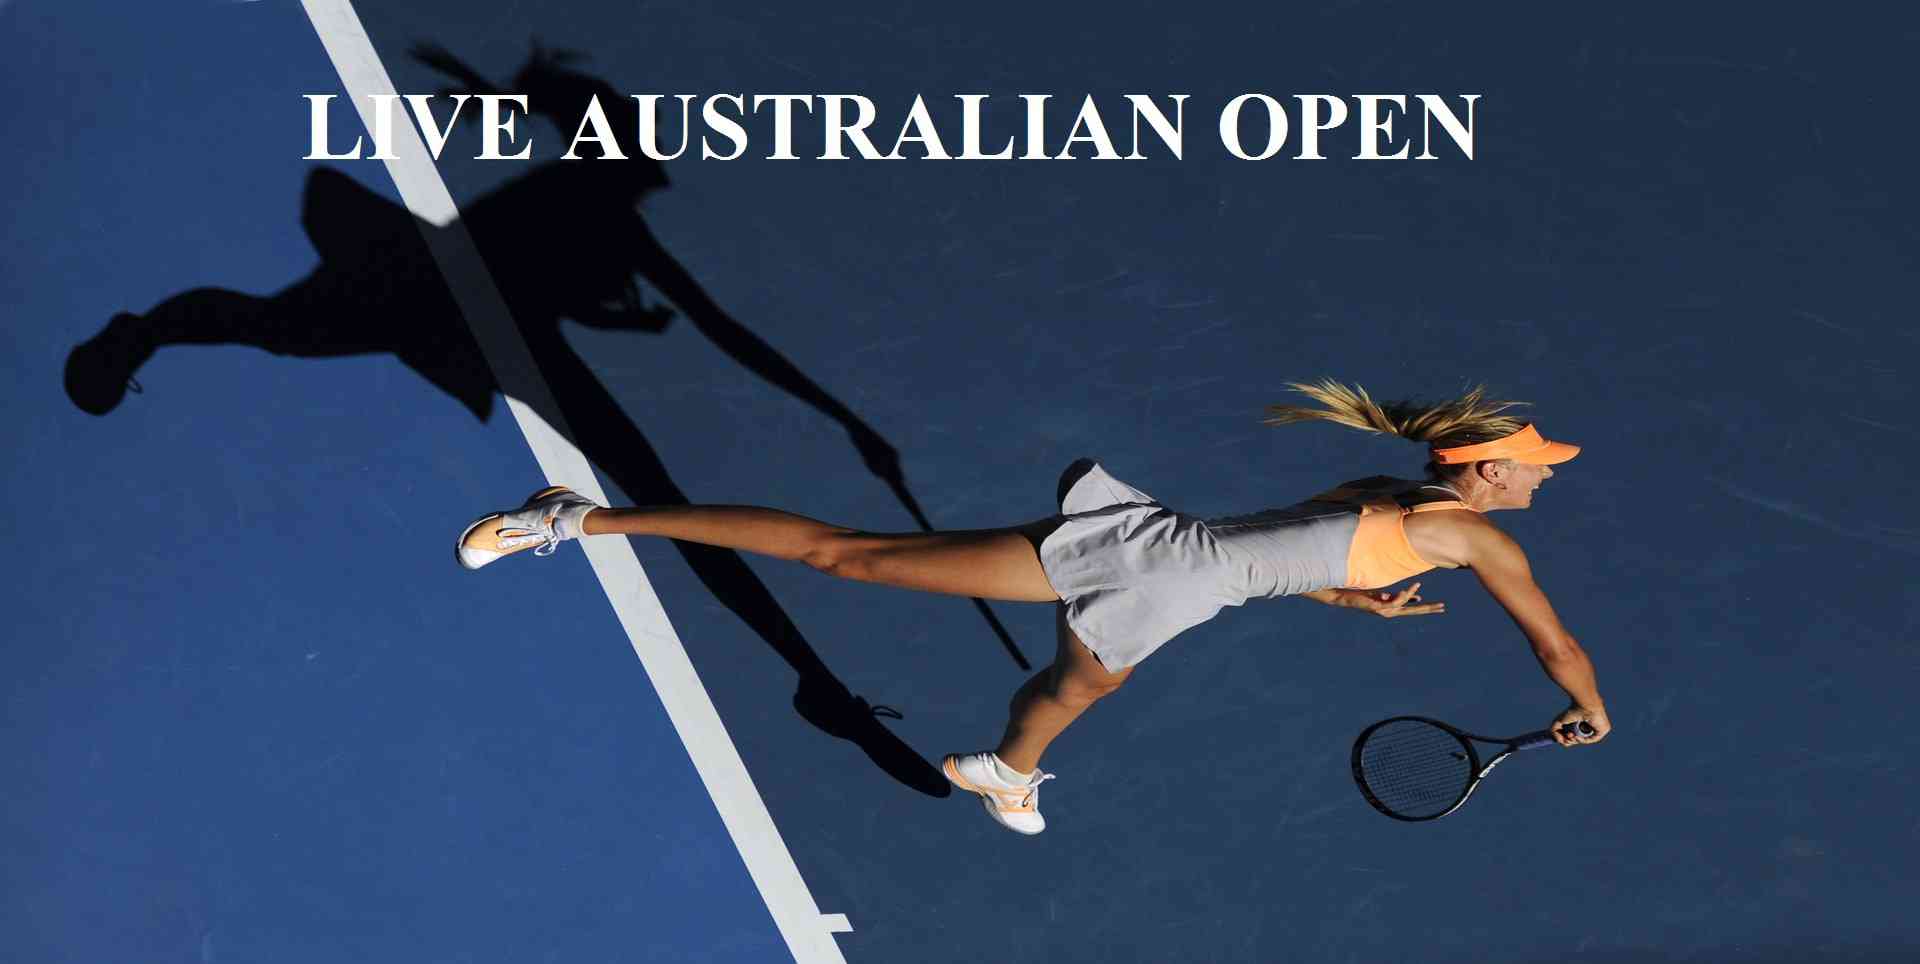 Watch 2018 Australian Open Tennis 4 Round Live